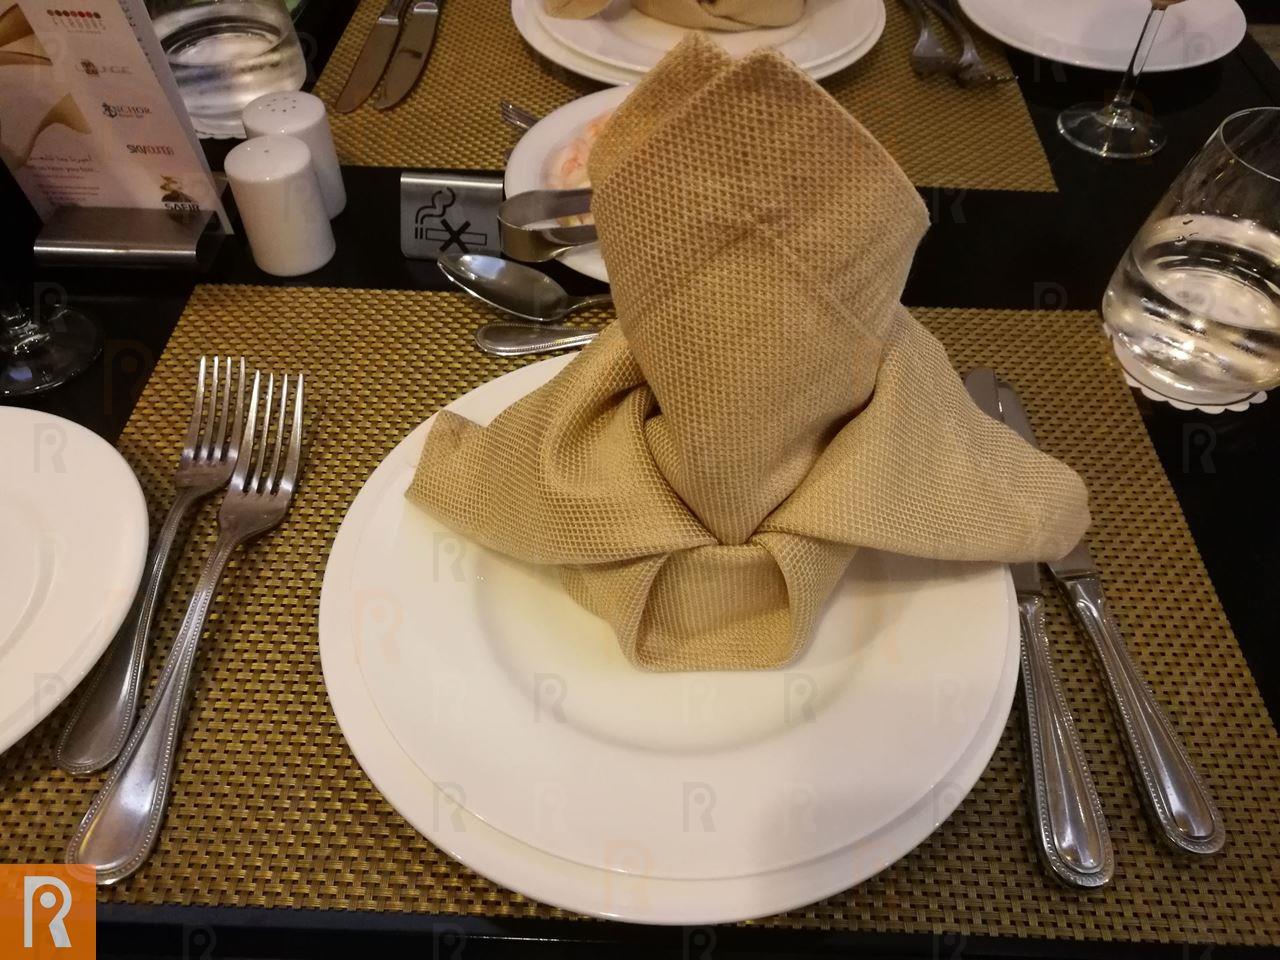 عشاء كويتي في مطعم الروشنة في فندق سفير الفنطاس